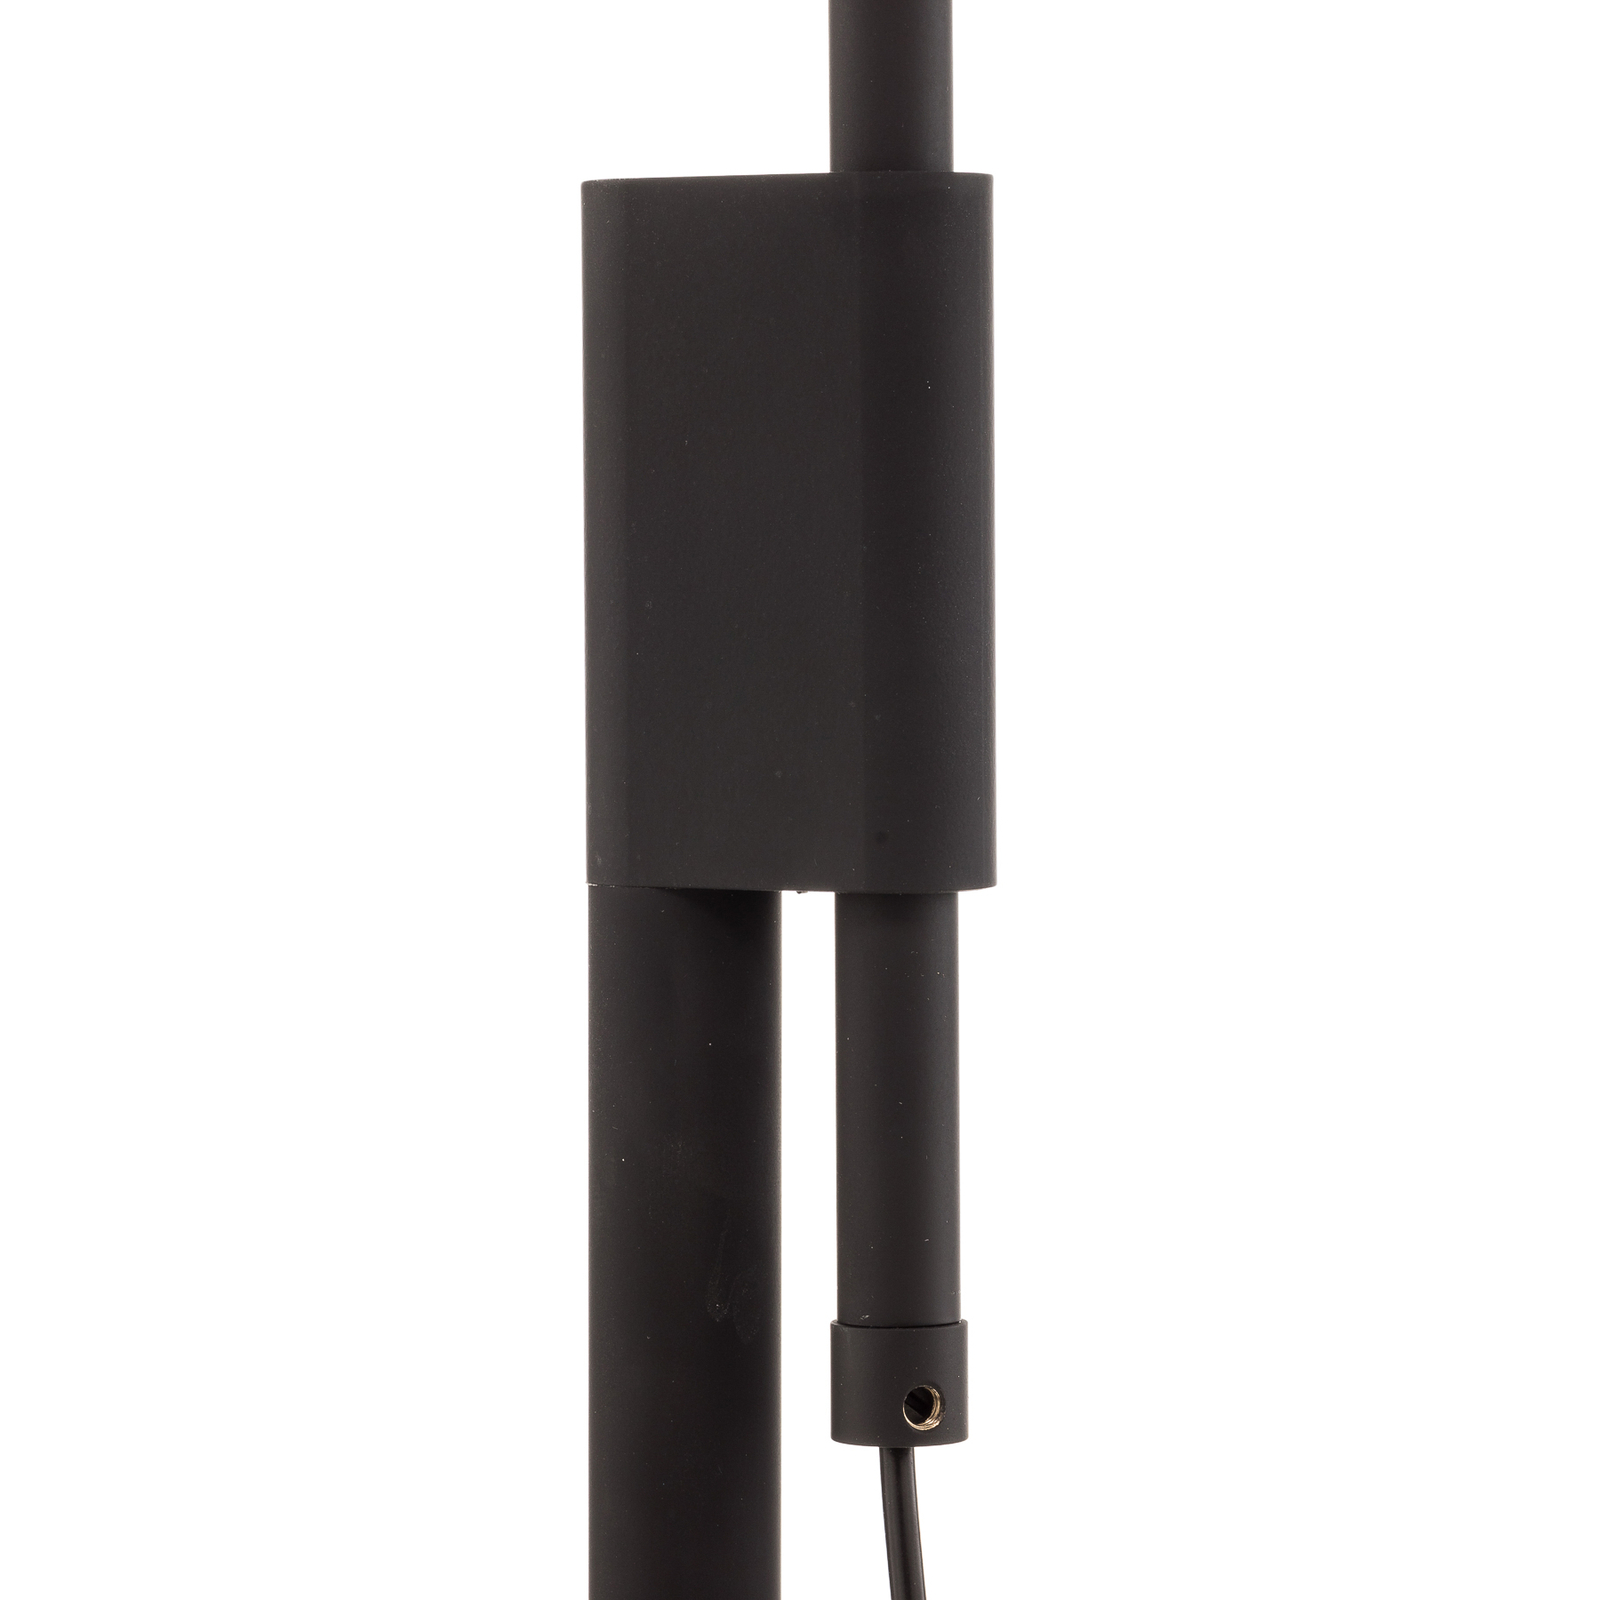 Rothfels Ulrik lampe sur pied LED, noir, nickel